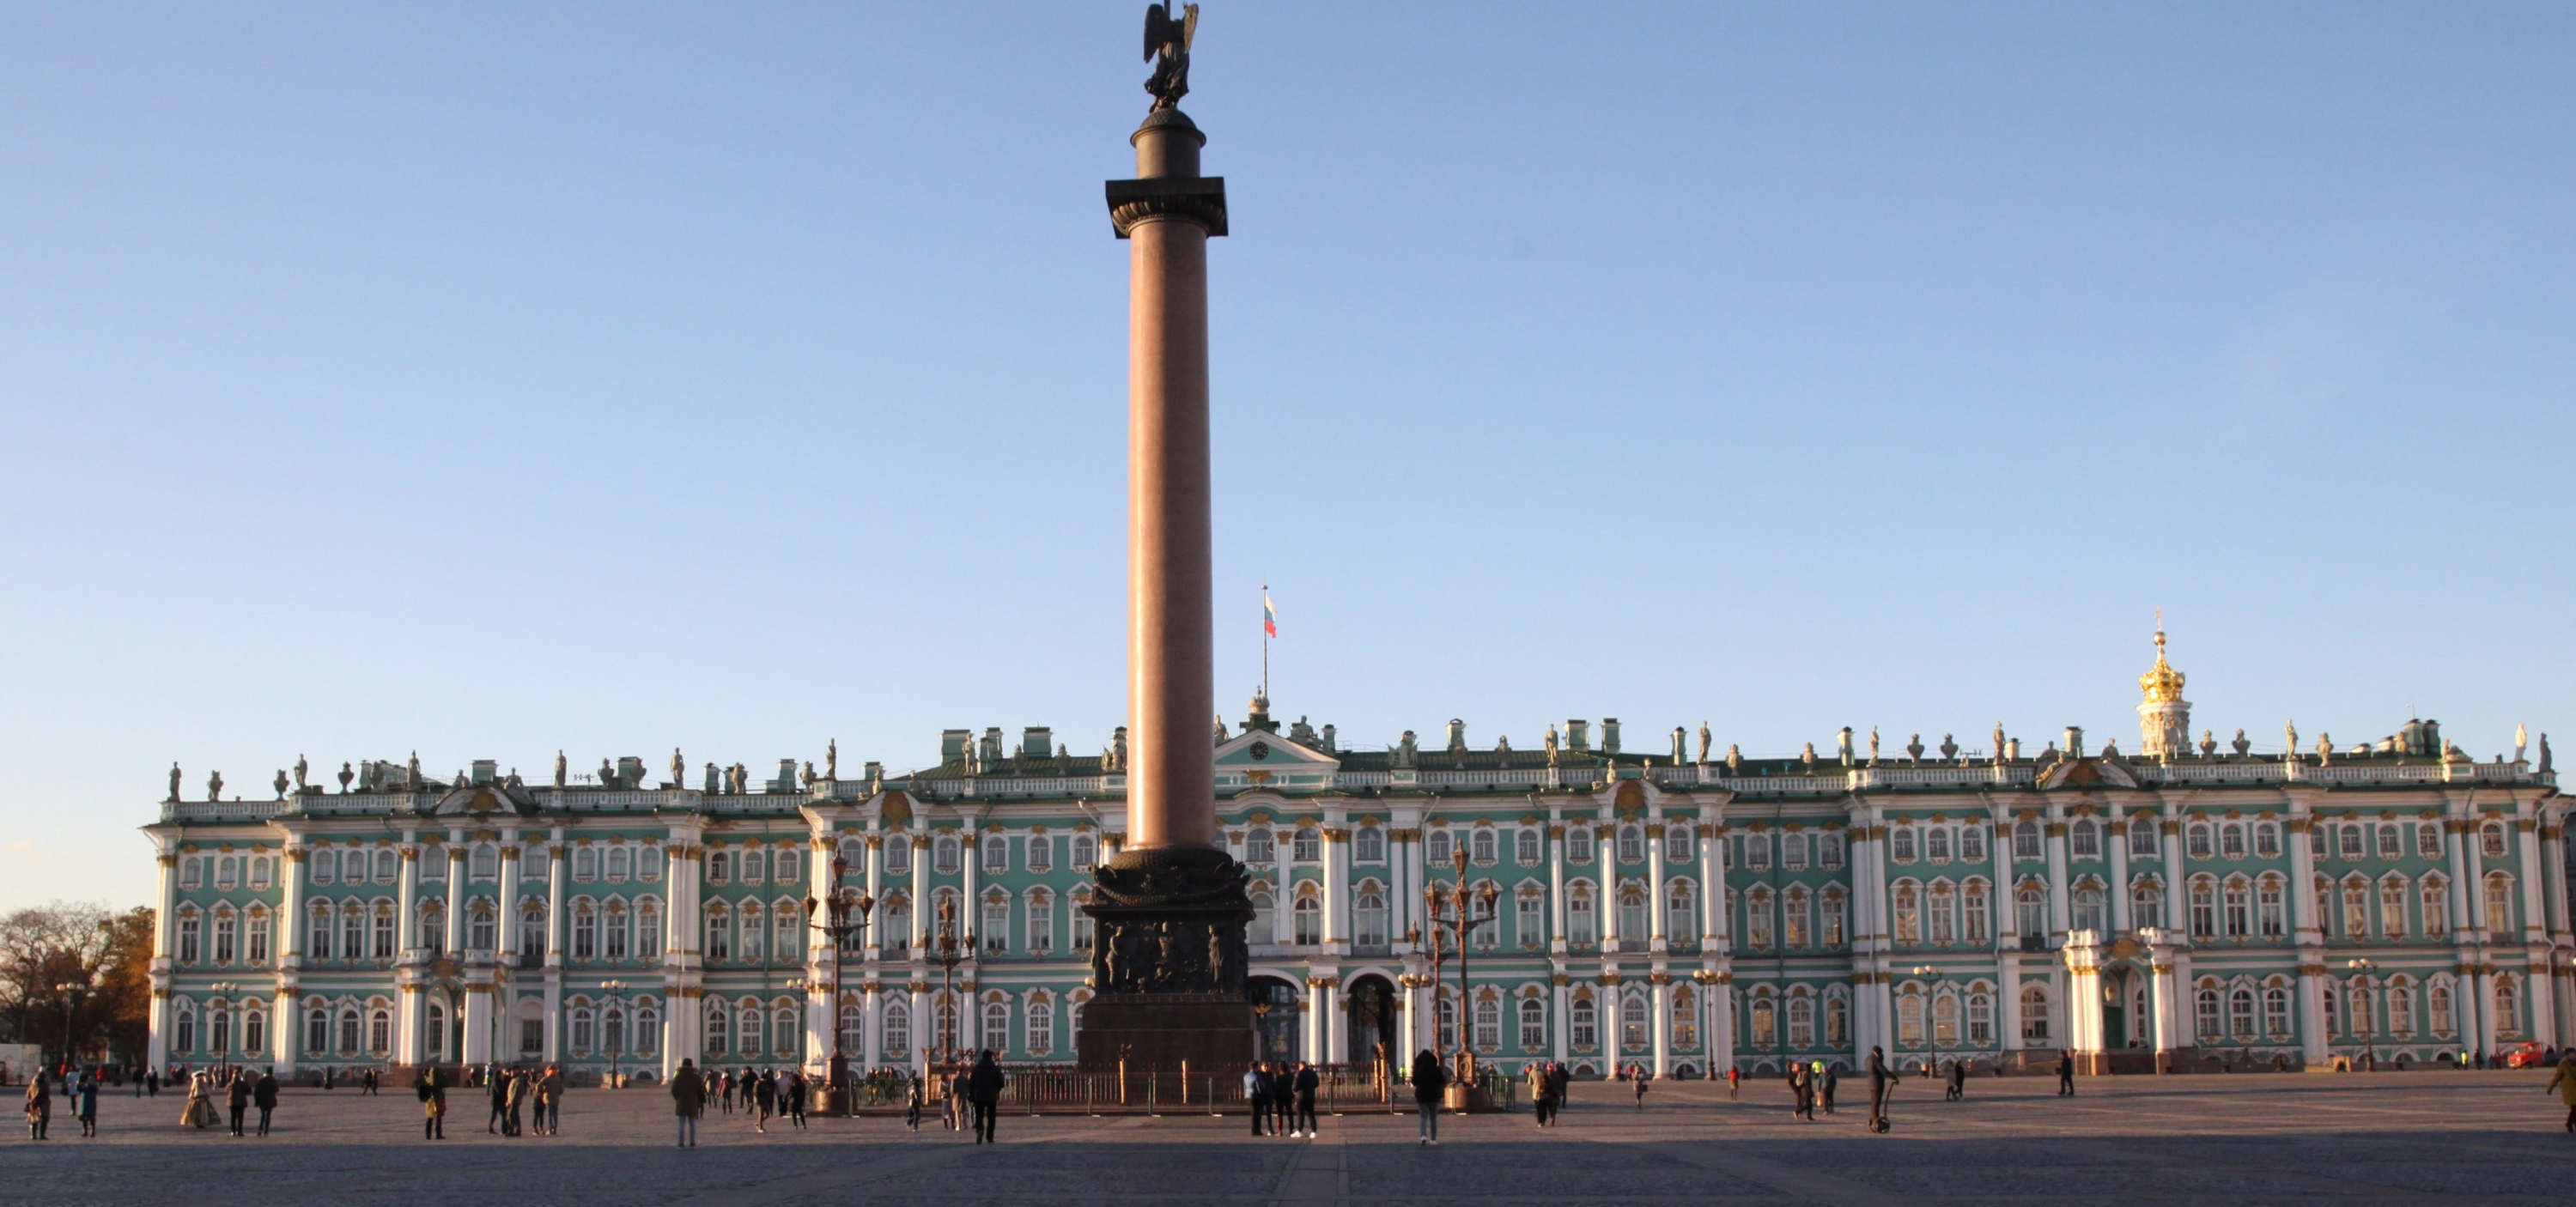 В Петербурге пройдет Международный медиа-форум «Диалог Культур»